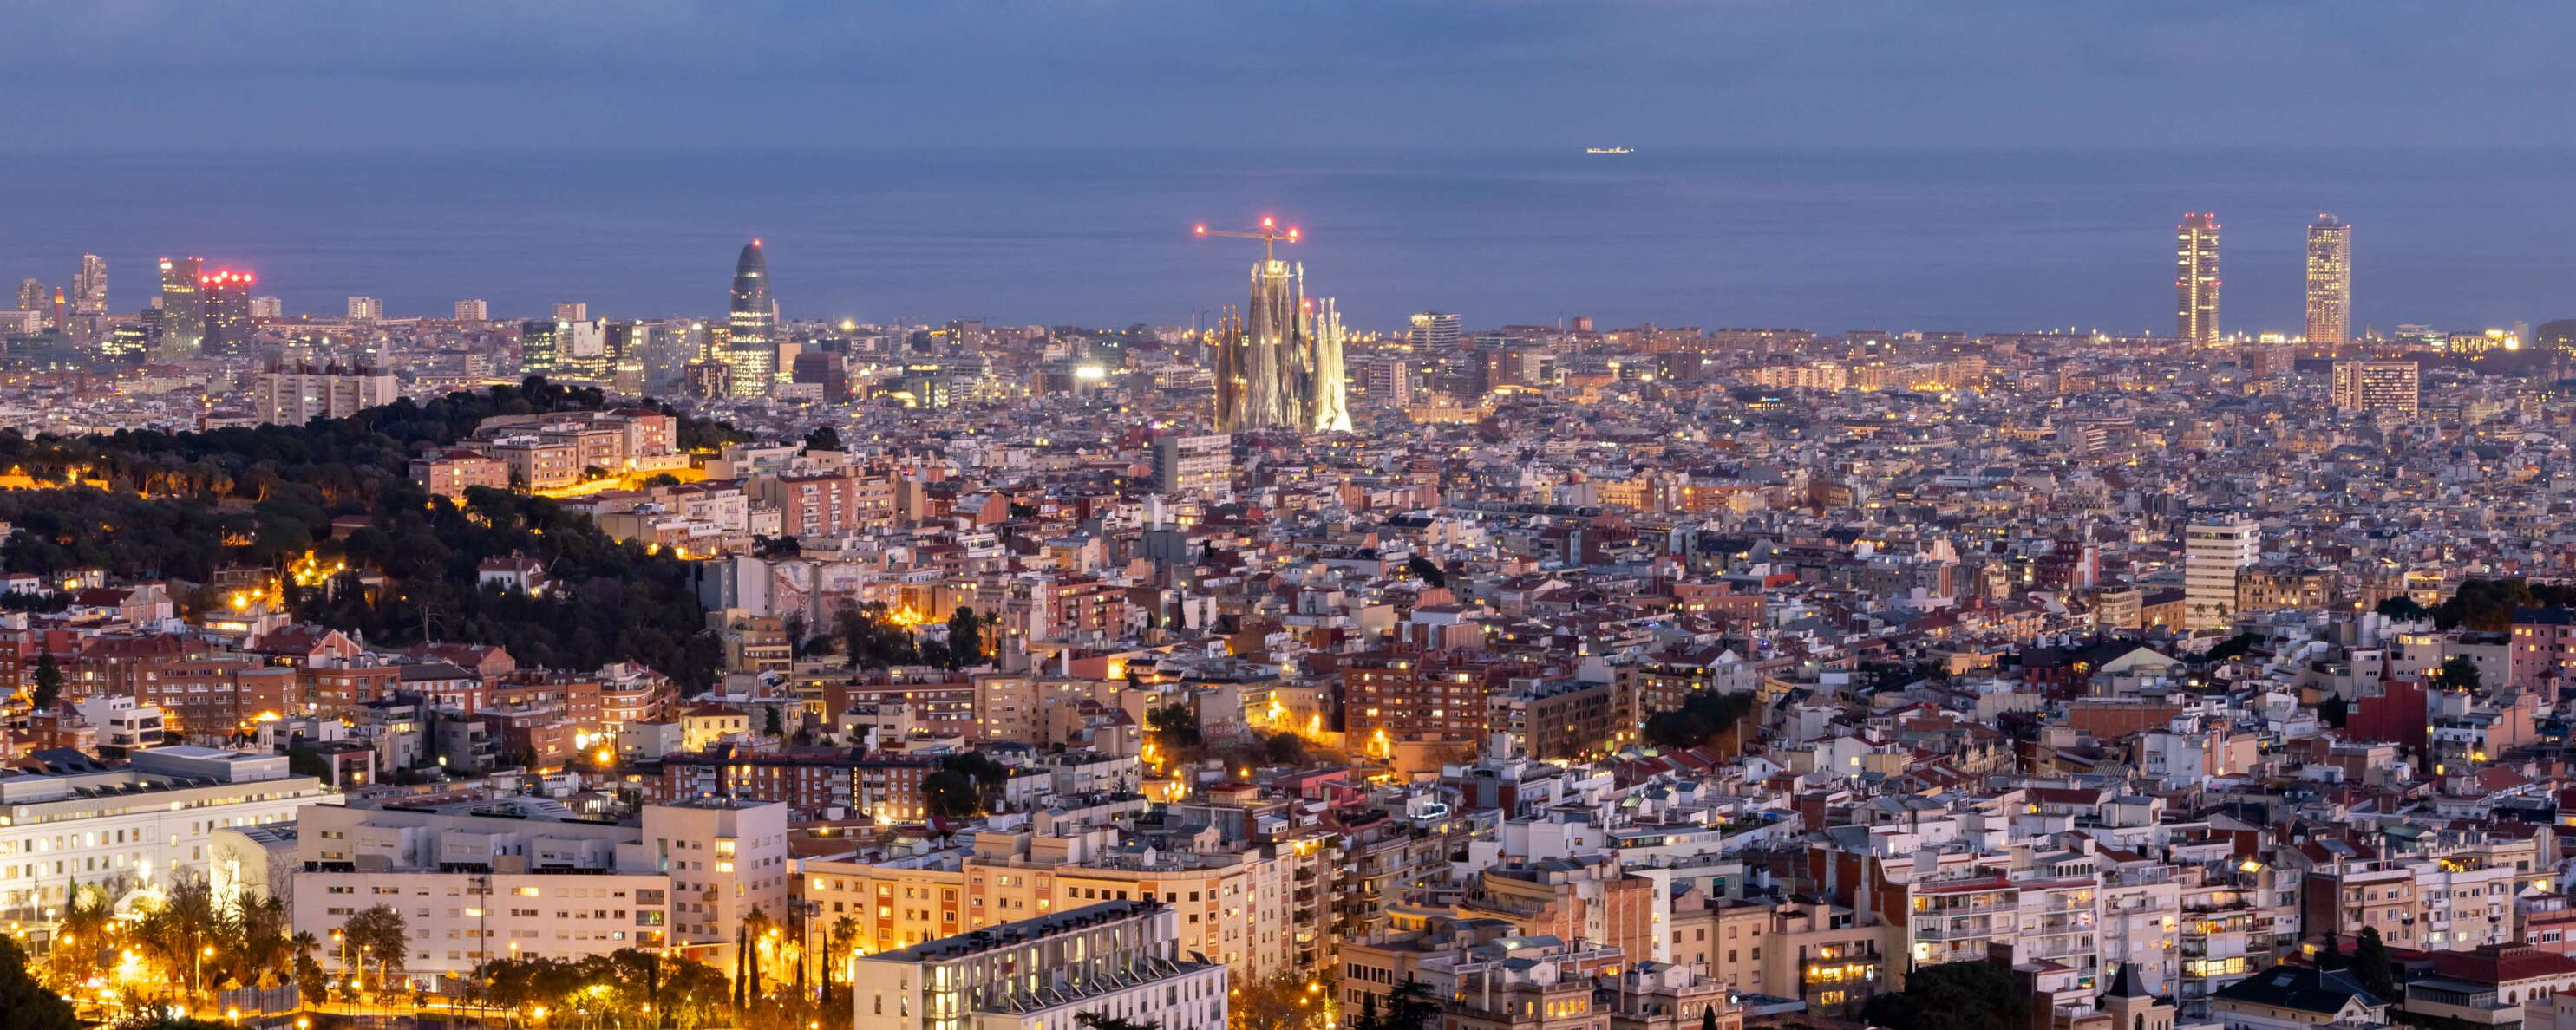 Barcelona with Sagrada Família at night